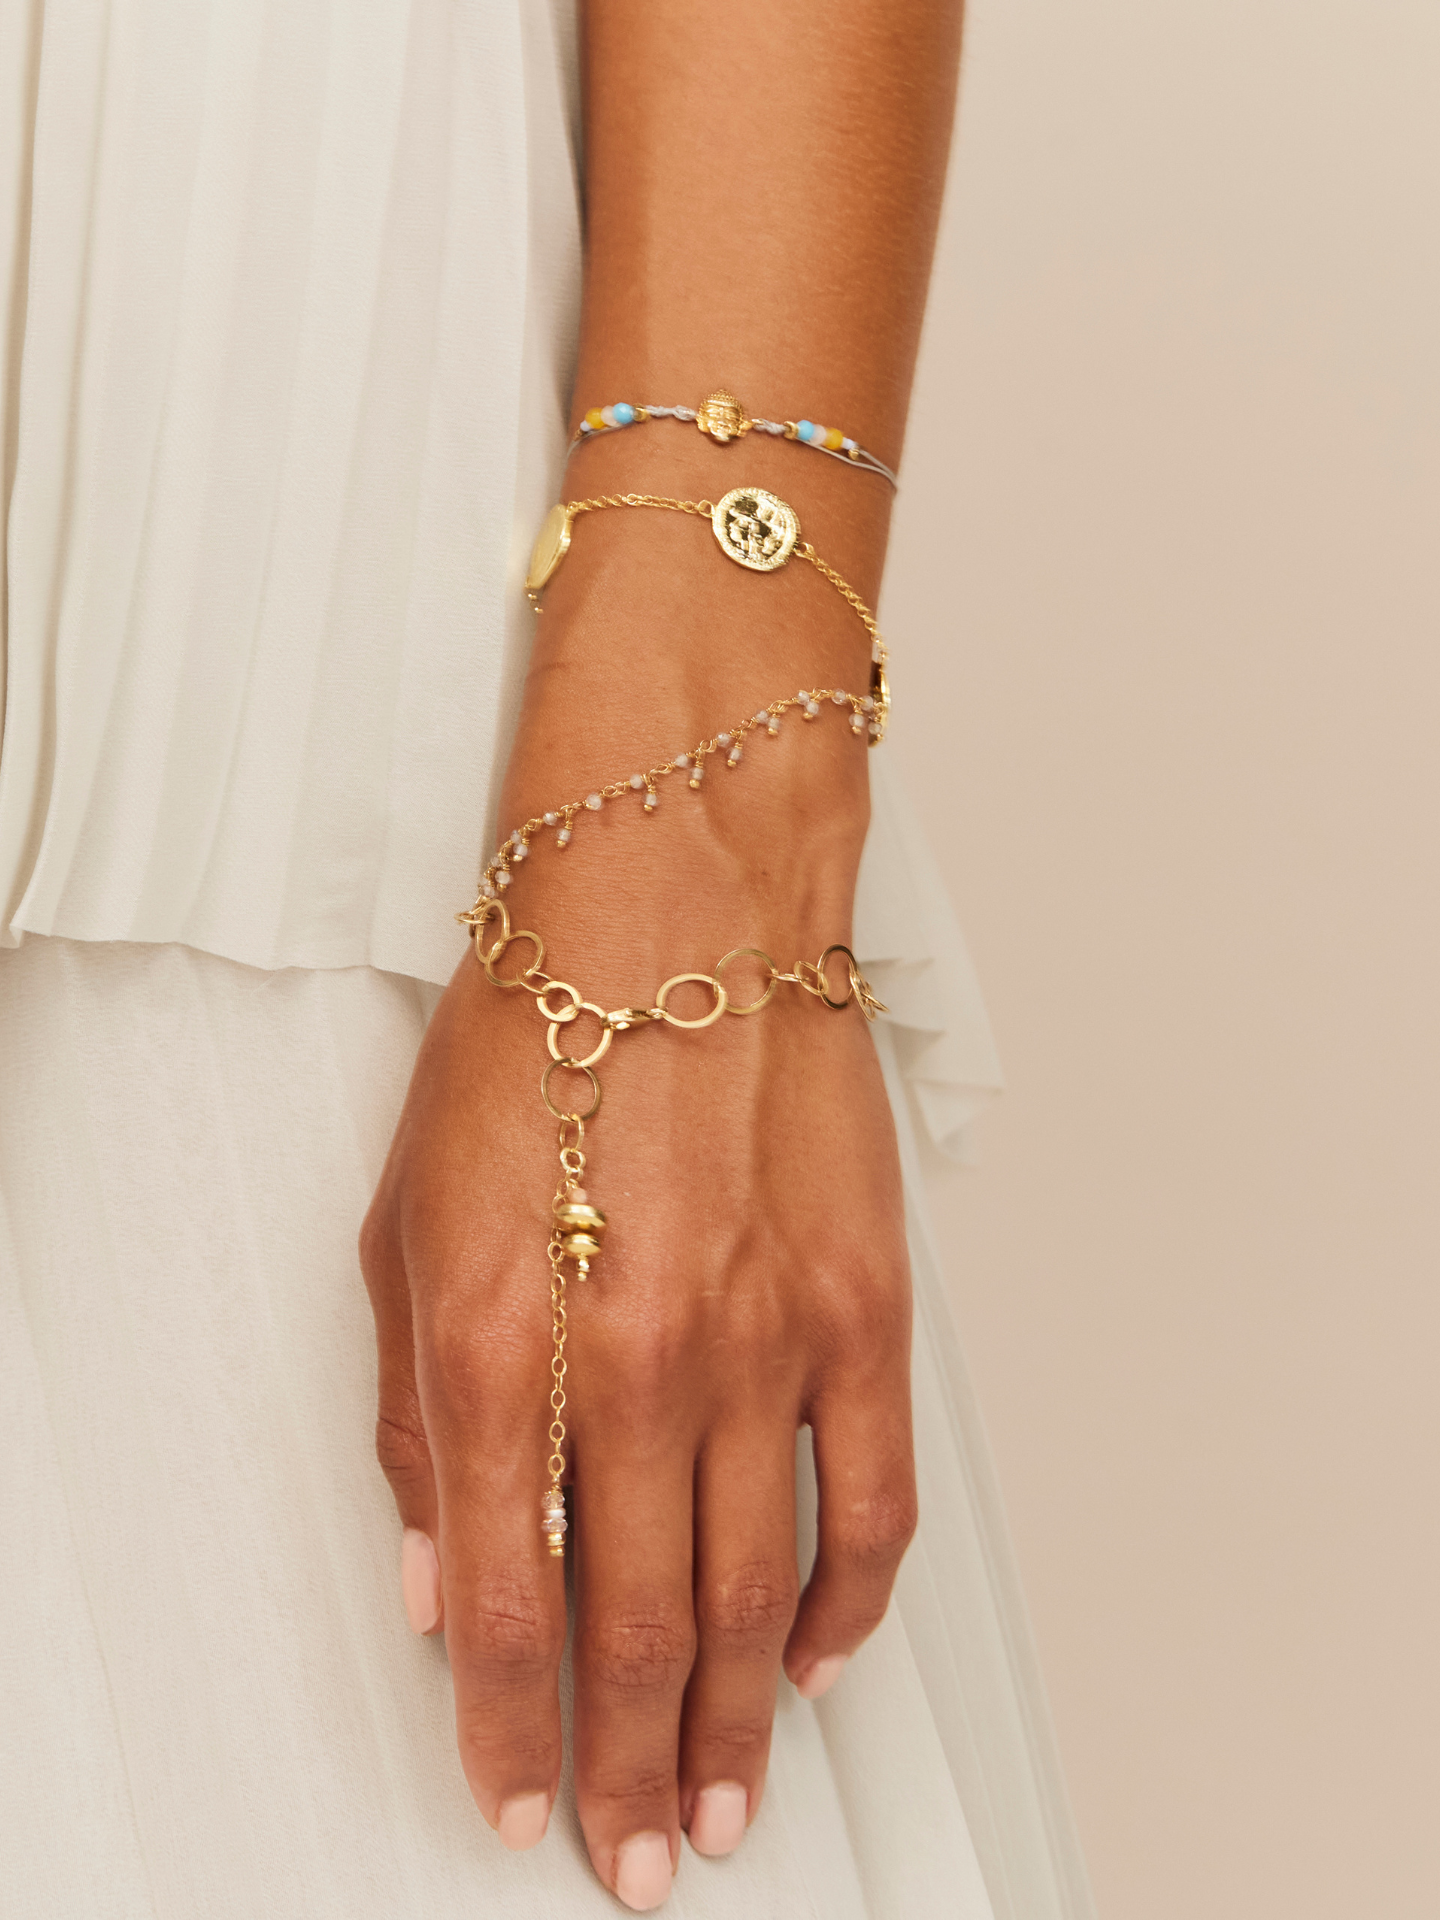 Frau trägt eine Kombi an Armbändern mit goldenen Gliedern, einer Münze als Anhänger und einigen aufregenden Perlen und goldenem Buddha Anhänger